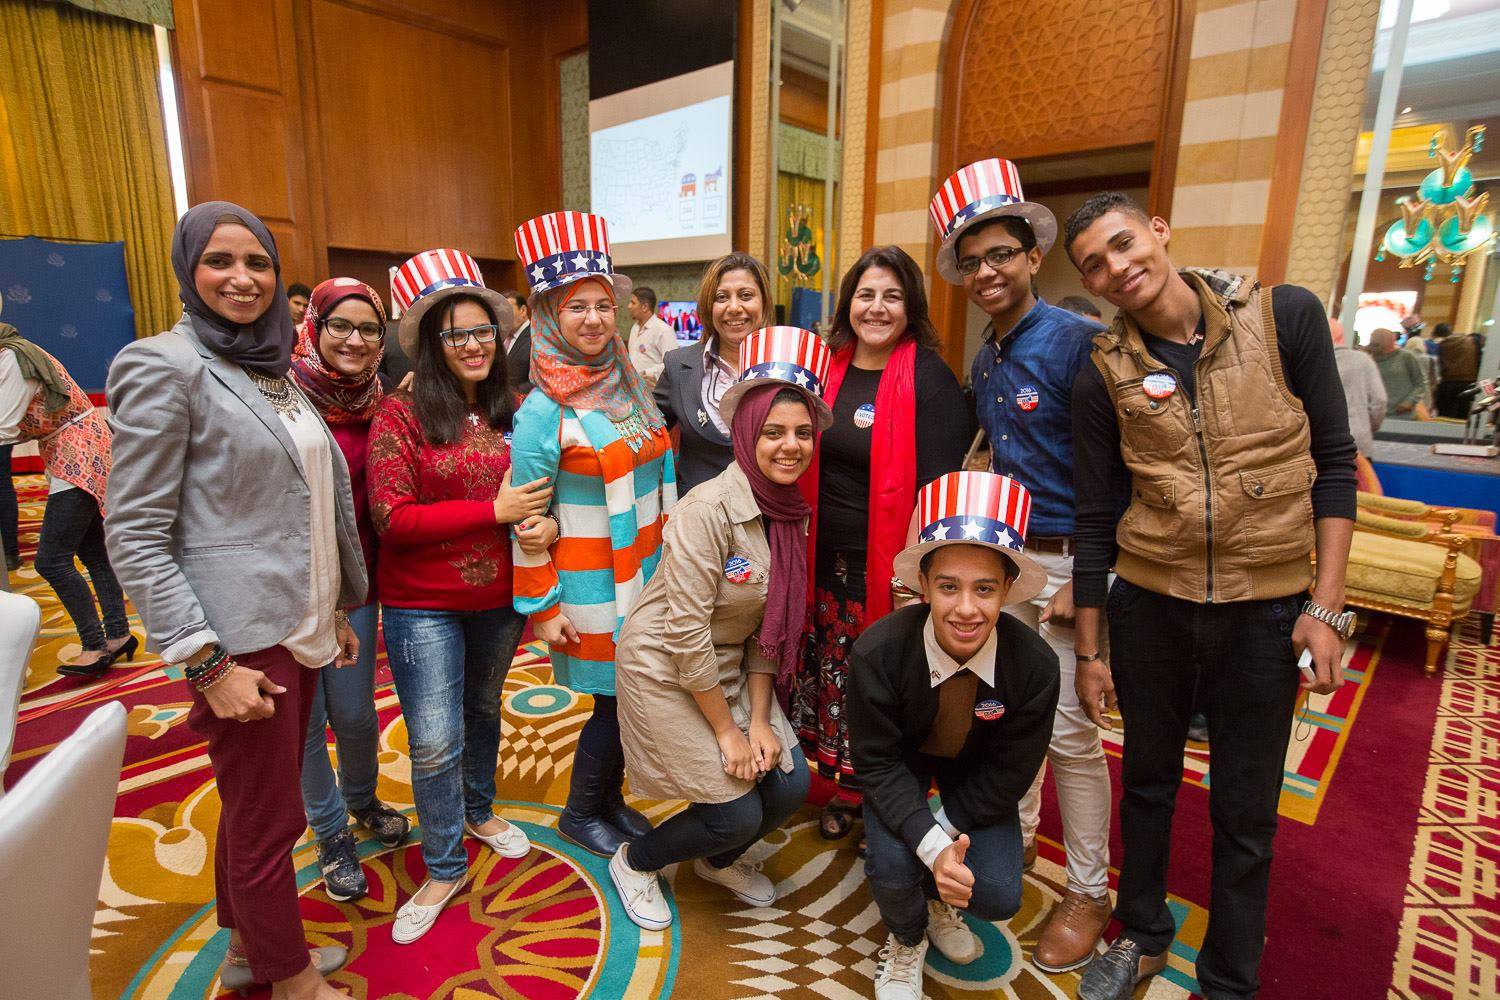 الأحتفال بالانتخابات الأمريكية مع بعض الأصدقاء المصريين فى نوفمبر